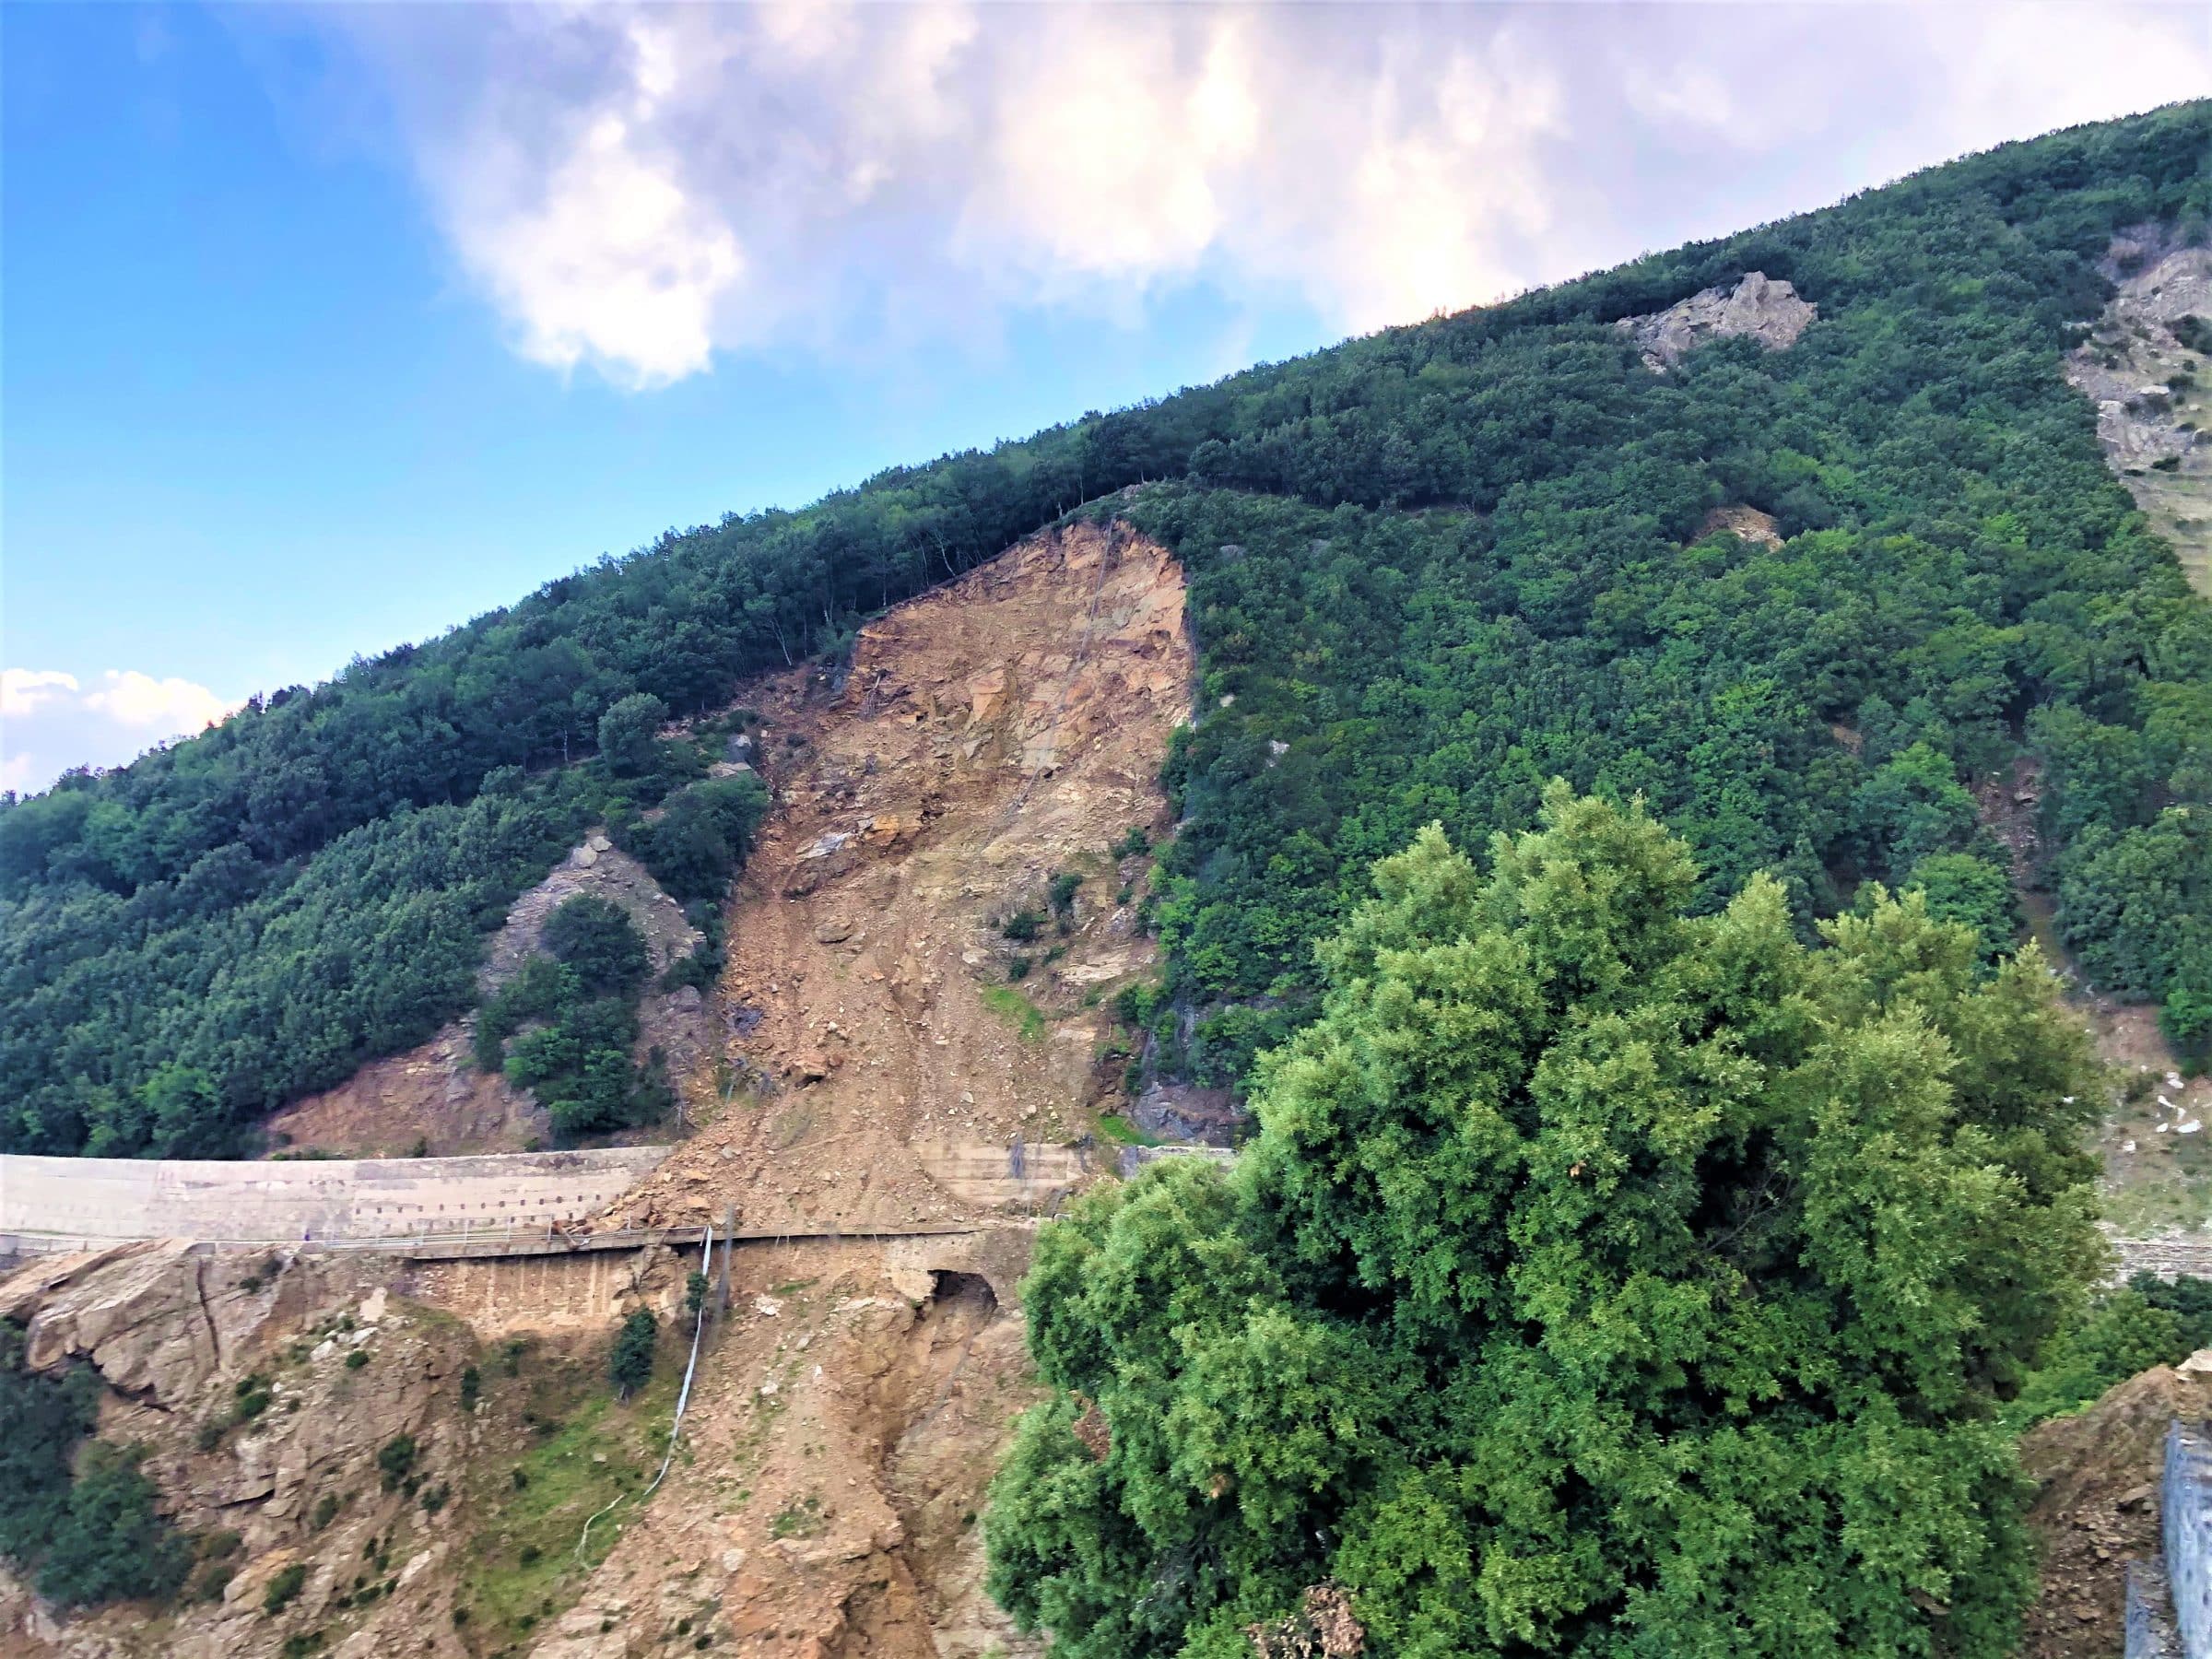  Roadtrip Zuid-Italië | een landverschuiving heeft de weg vernietigd